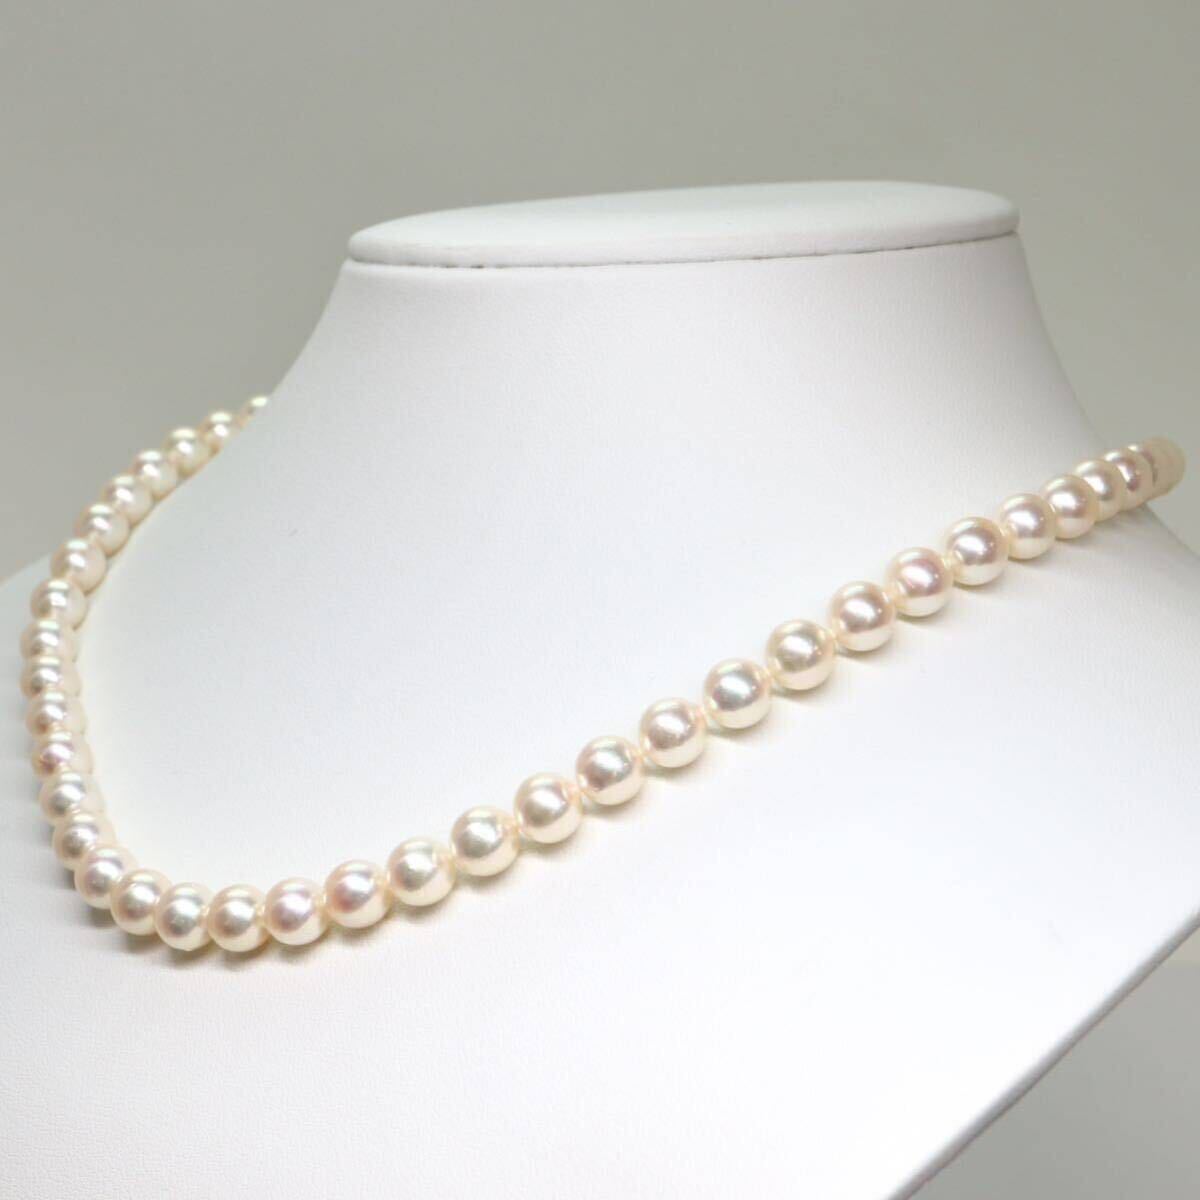 《アコヤ本真珠ネックレス》A 約7.0-7.5mm珠 33.3g 約43cm pearl necklace ジュエリー jewelry DC0/DC0の画像3